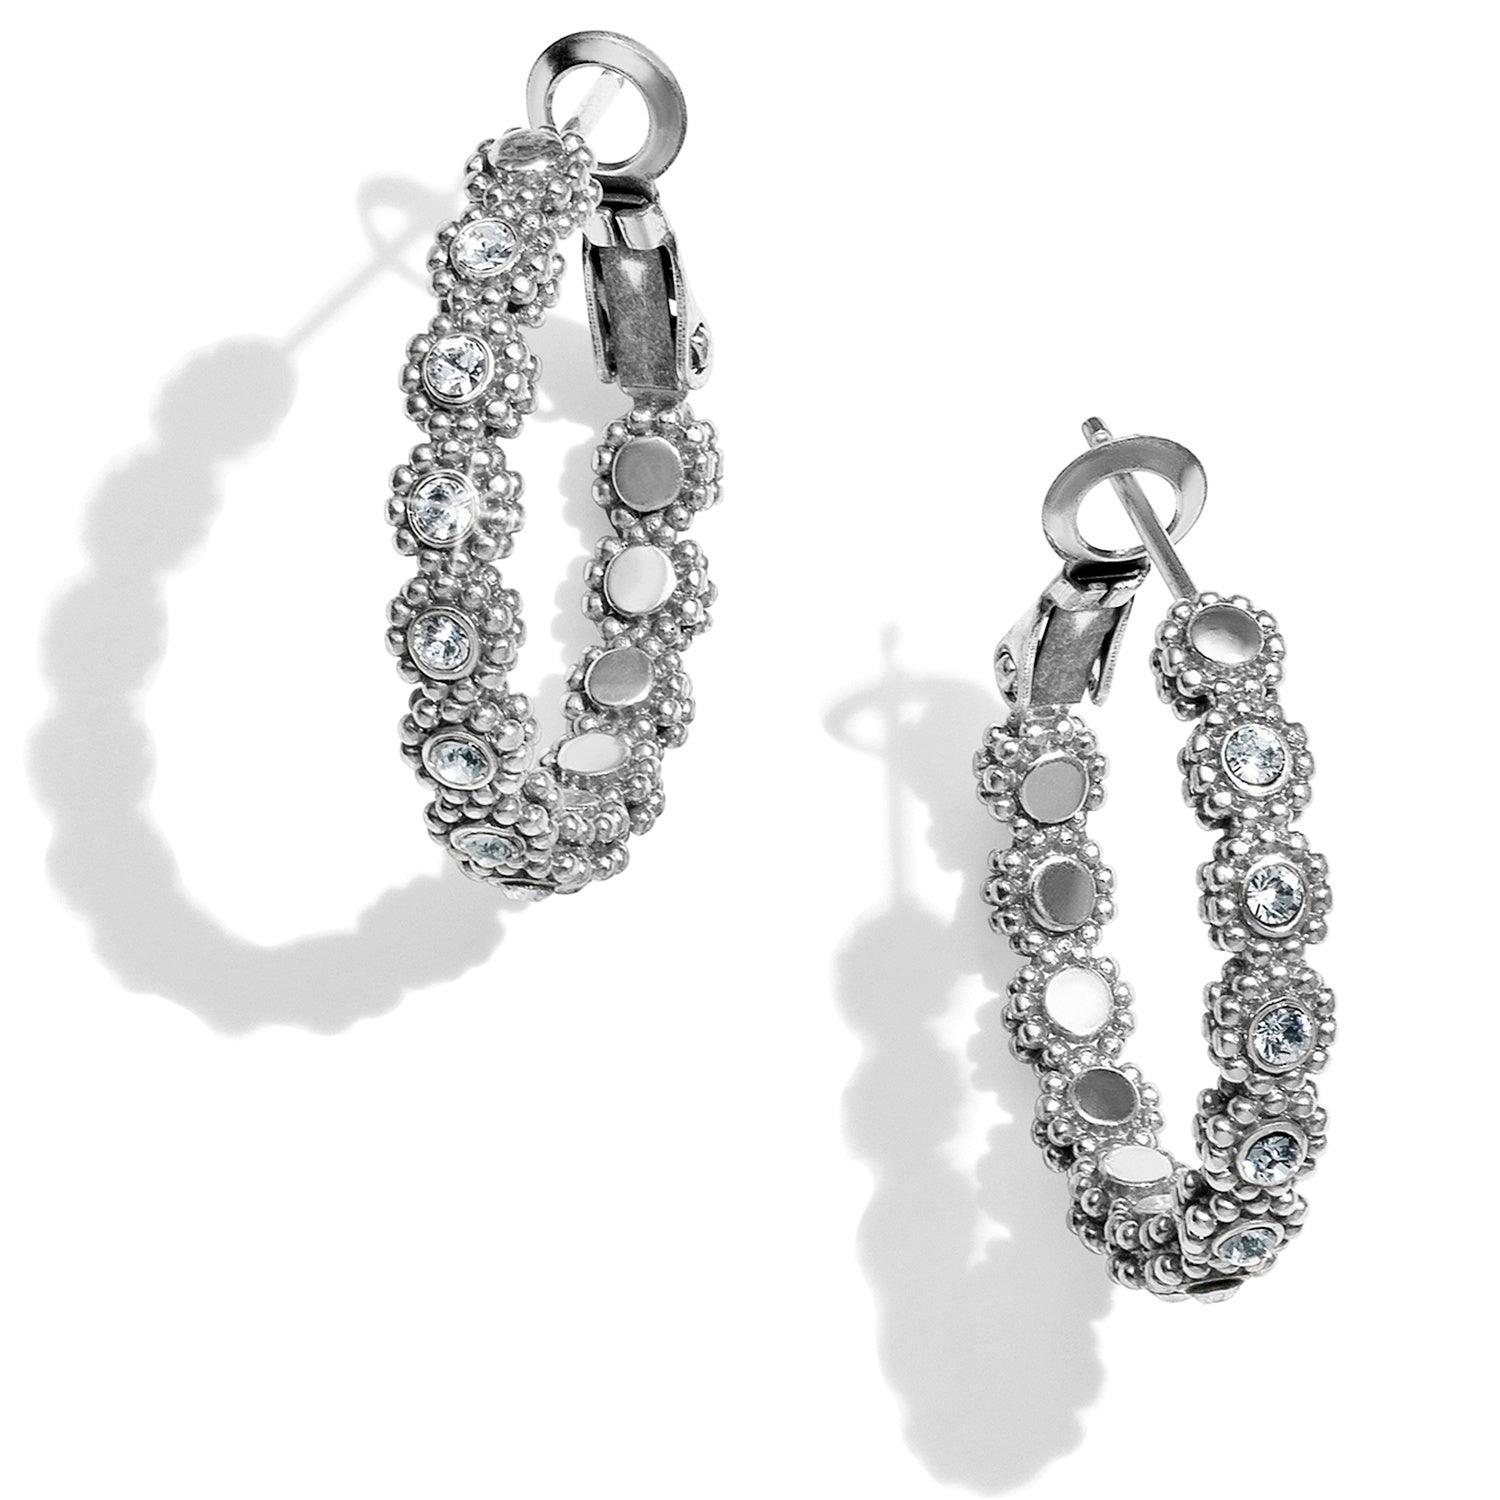 Twinkle Splendor Small Hoop Earrings - The Silver Dahlia